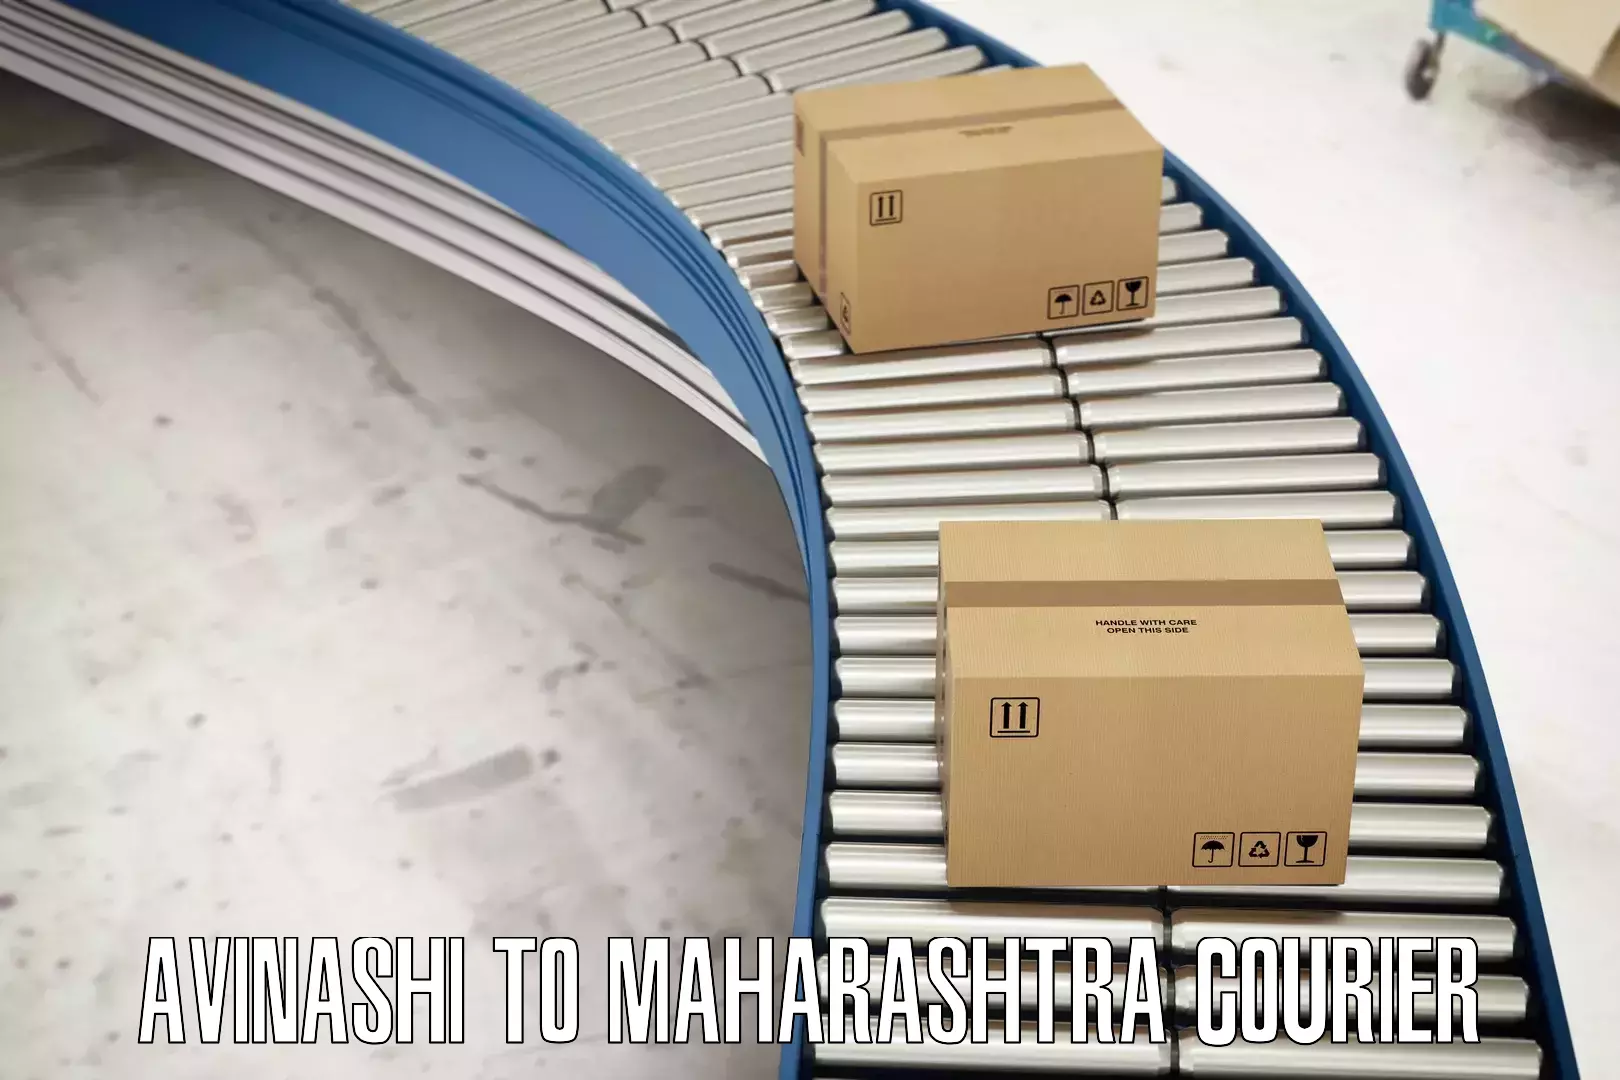 Quality courier partnerships in Avinashi to Mahabaleshwar